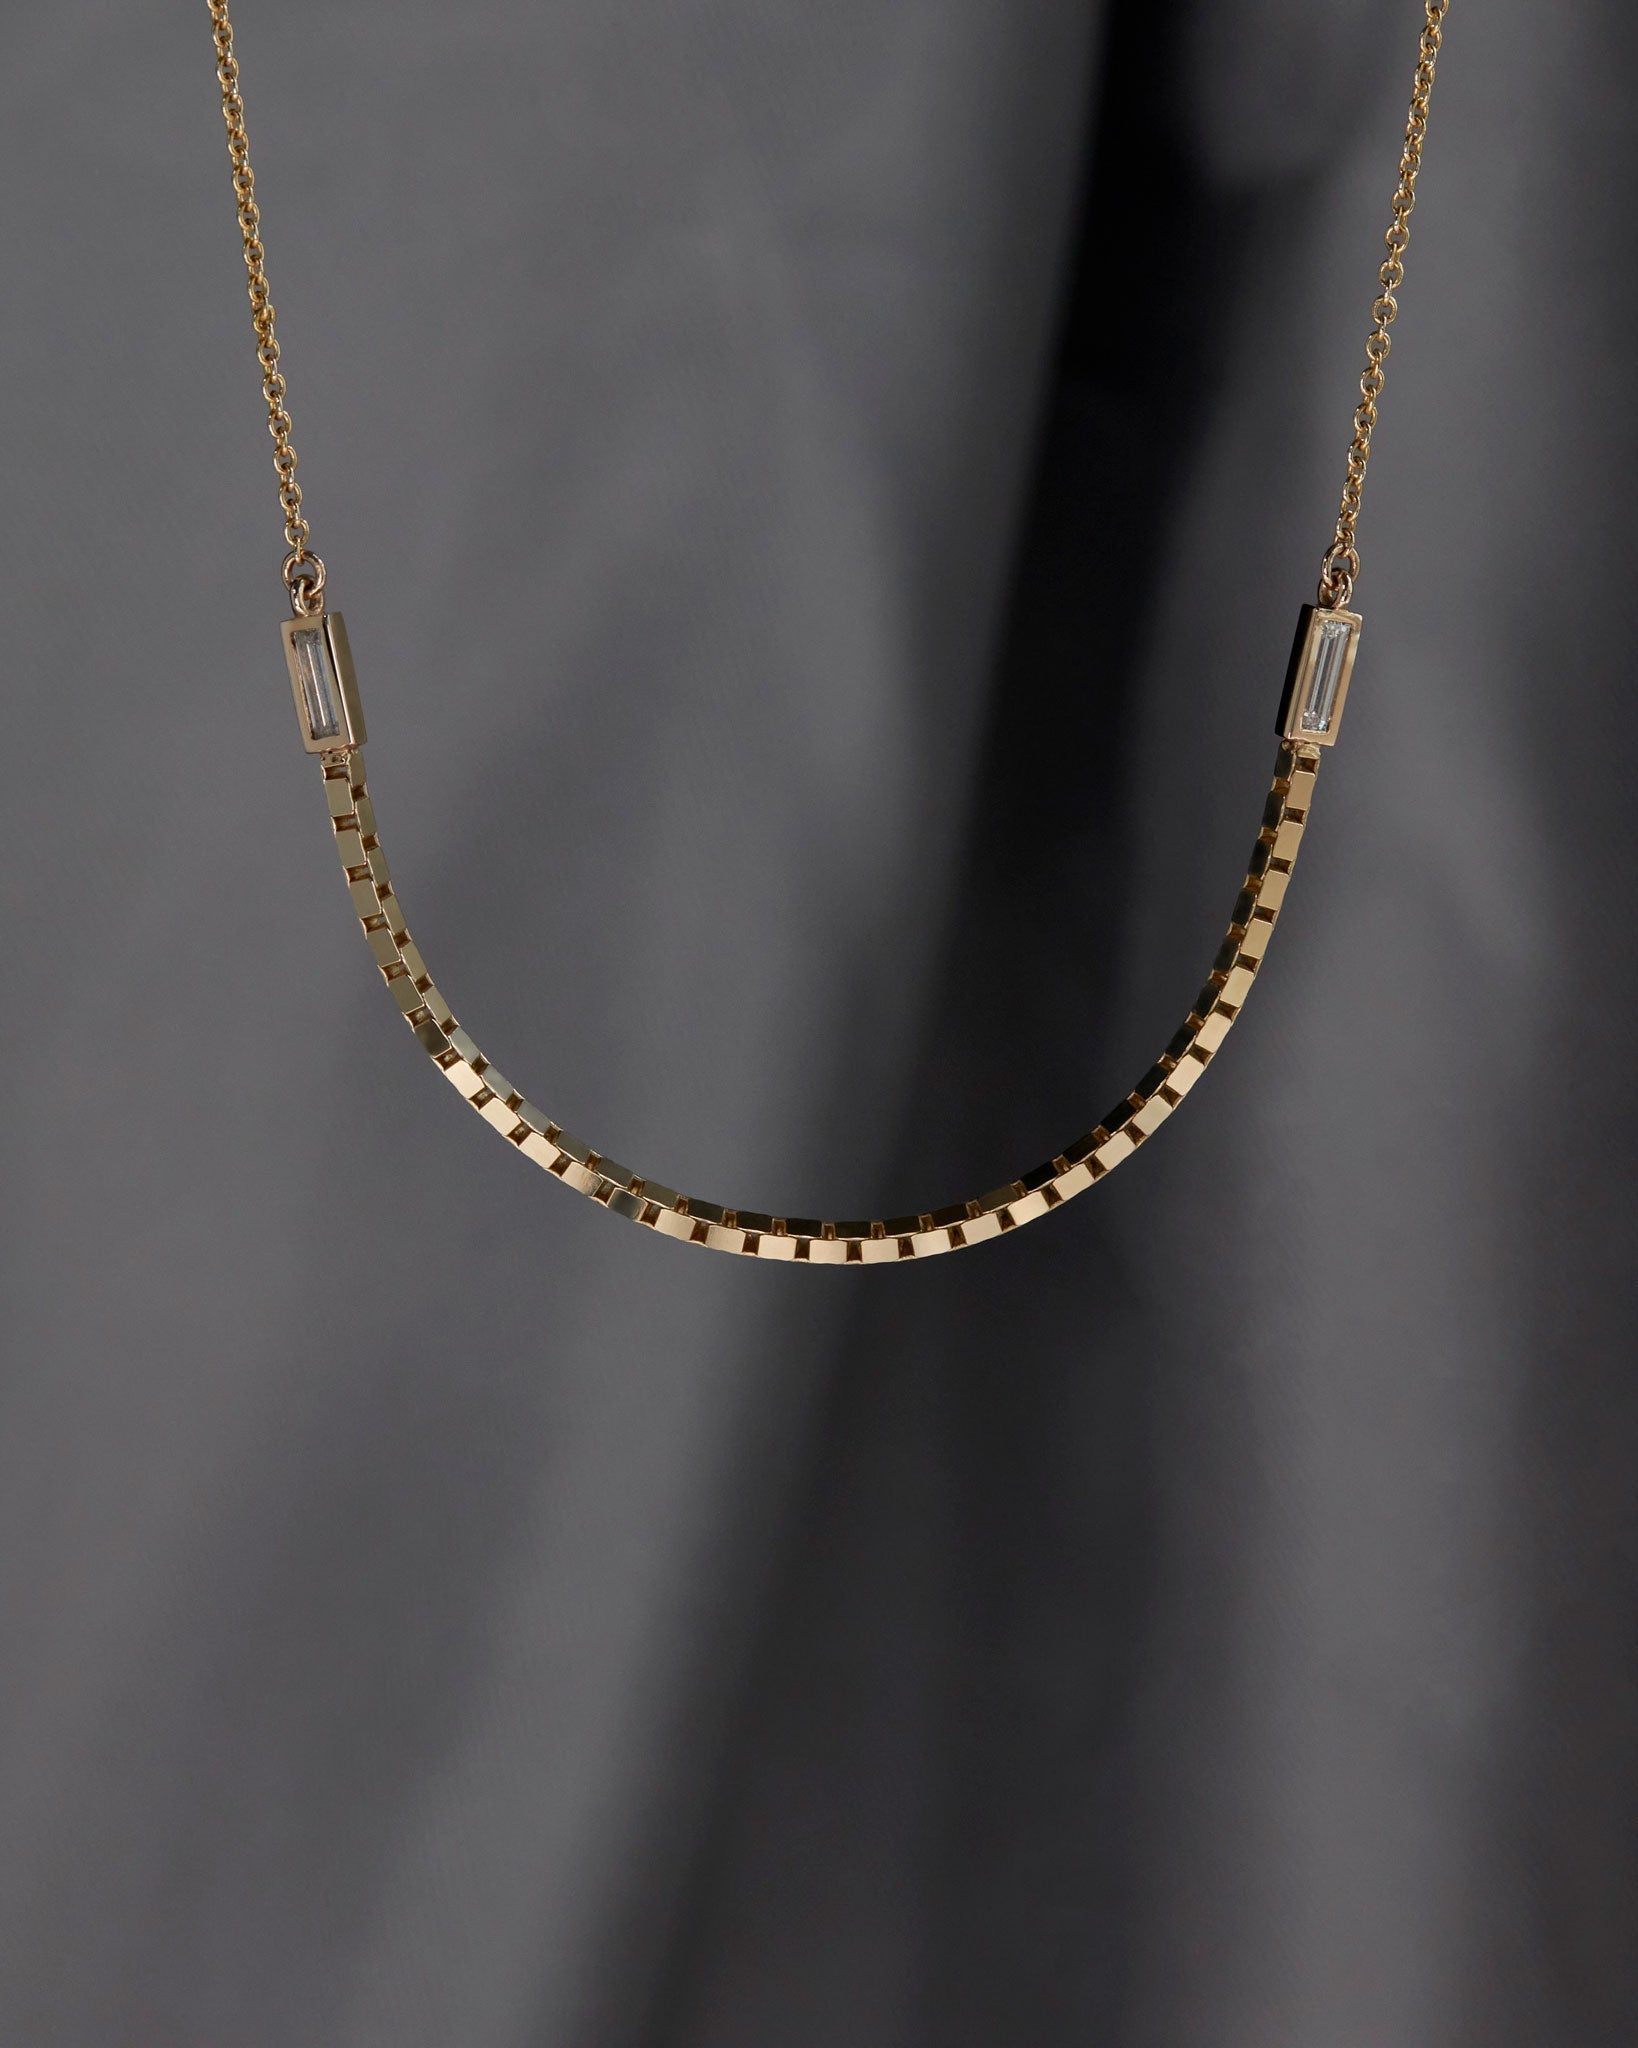 halo luna necklace with dark background